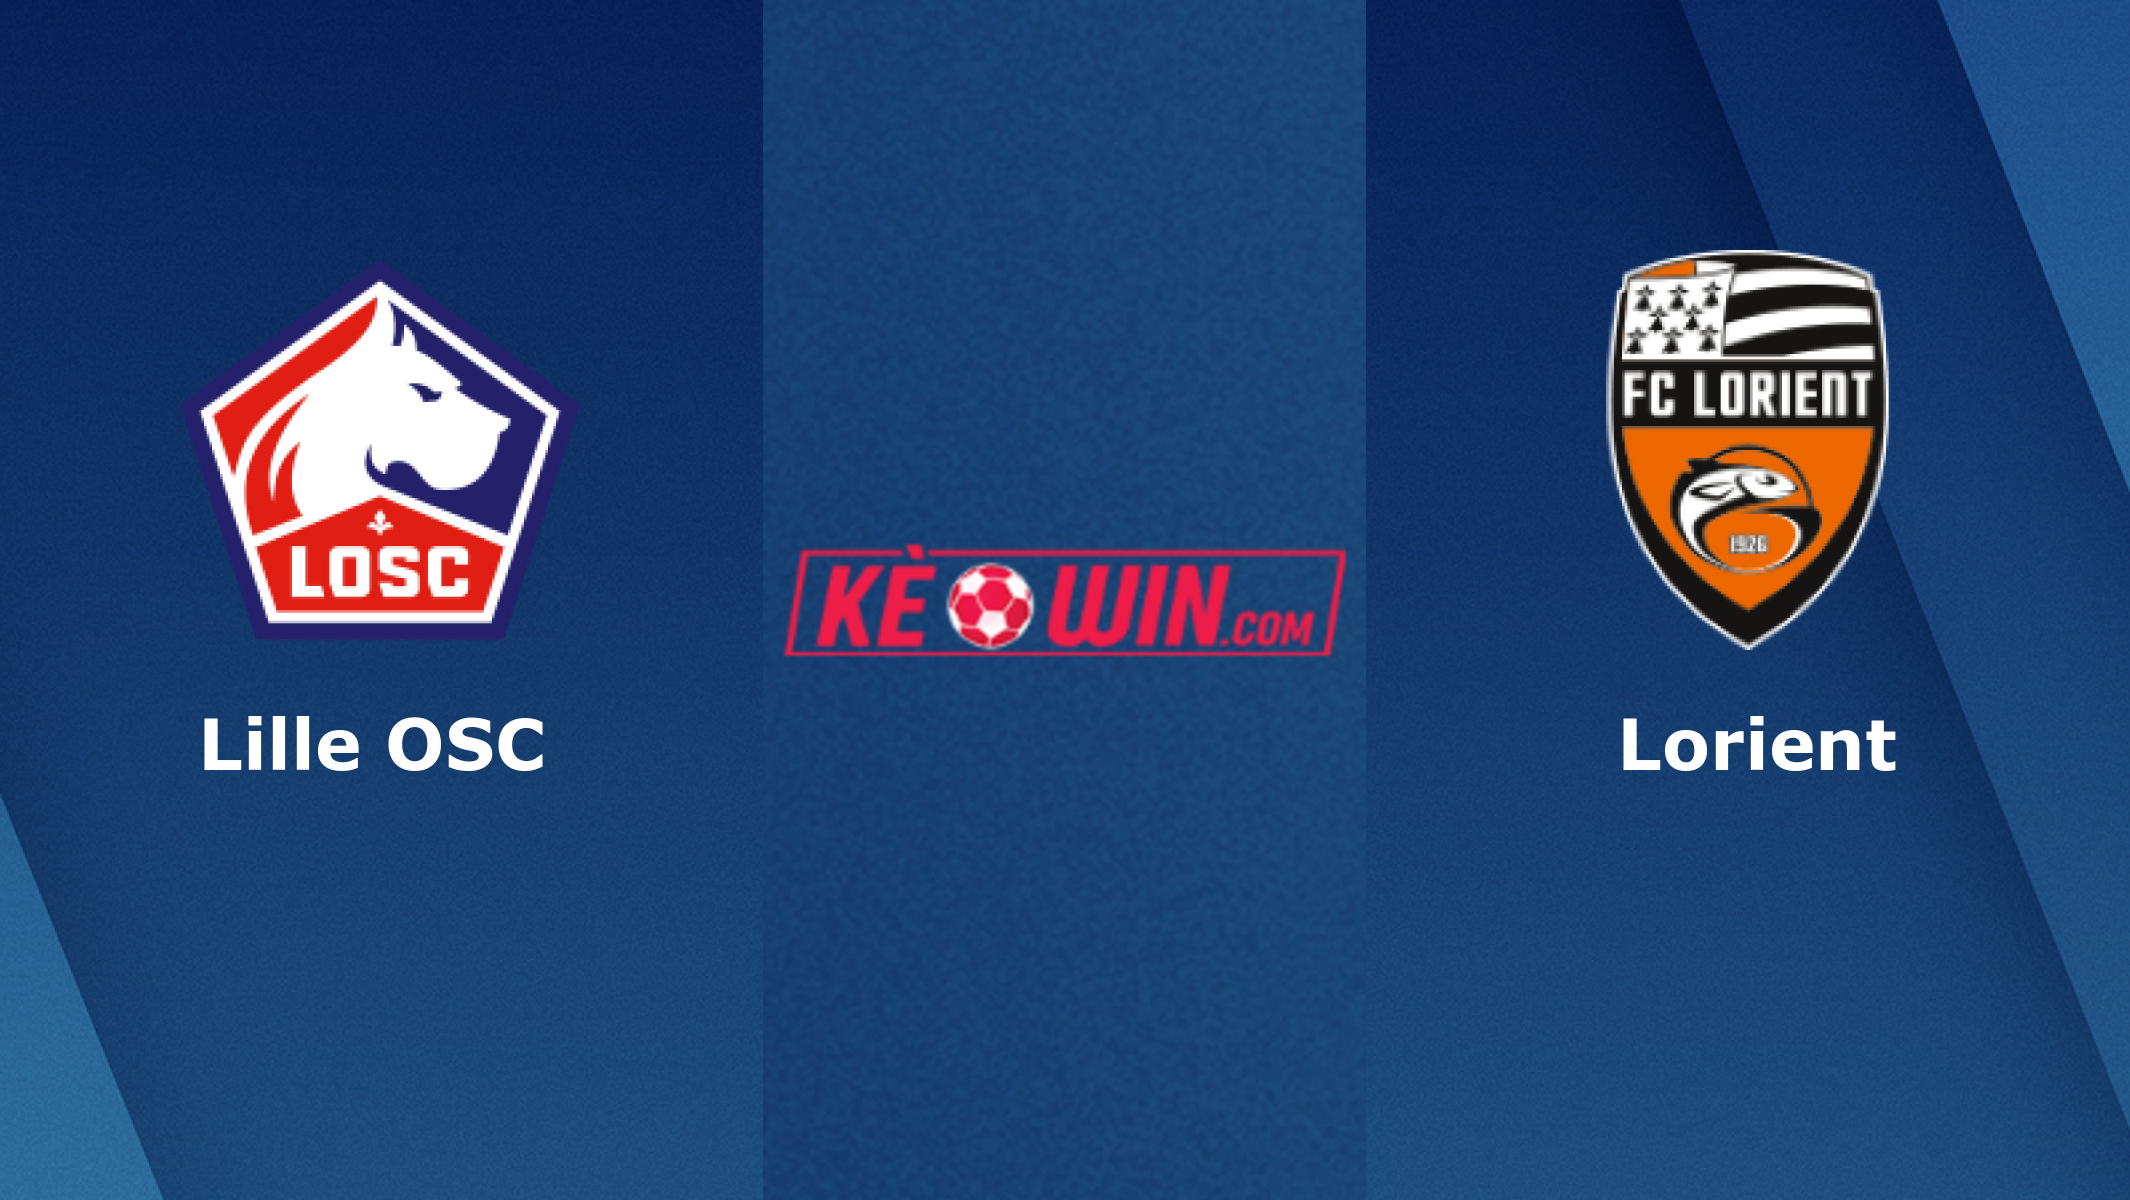 Lille OSC vs Lorient – Soi kèo bóng đá 01h00 20/01/2022 – VĐQG Pháp